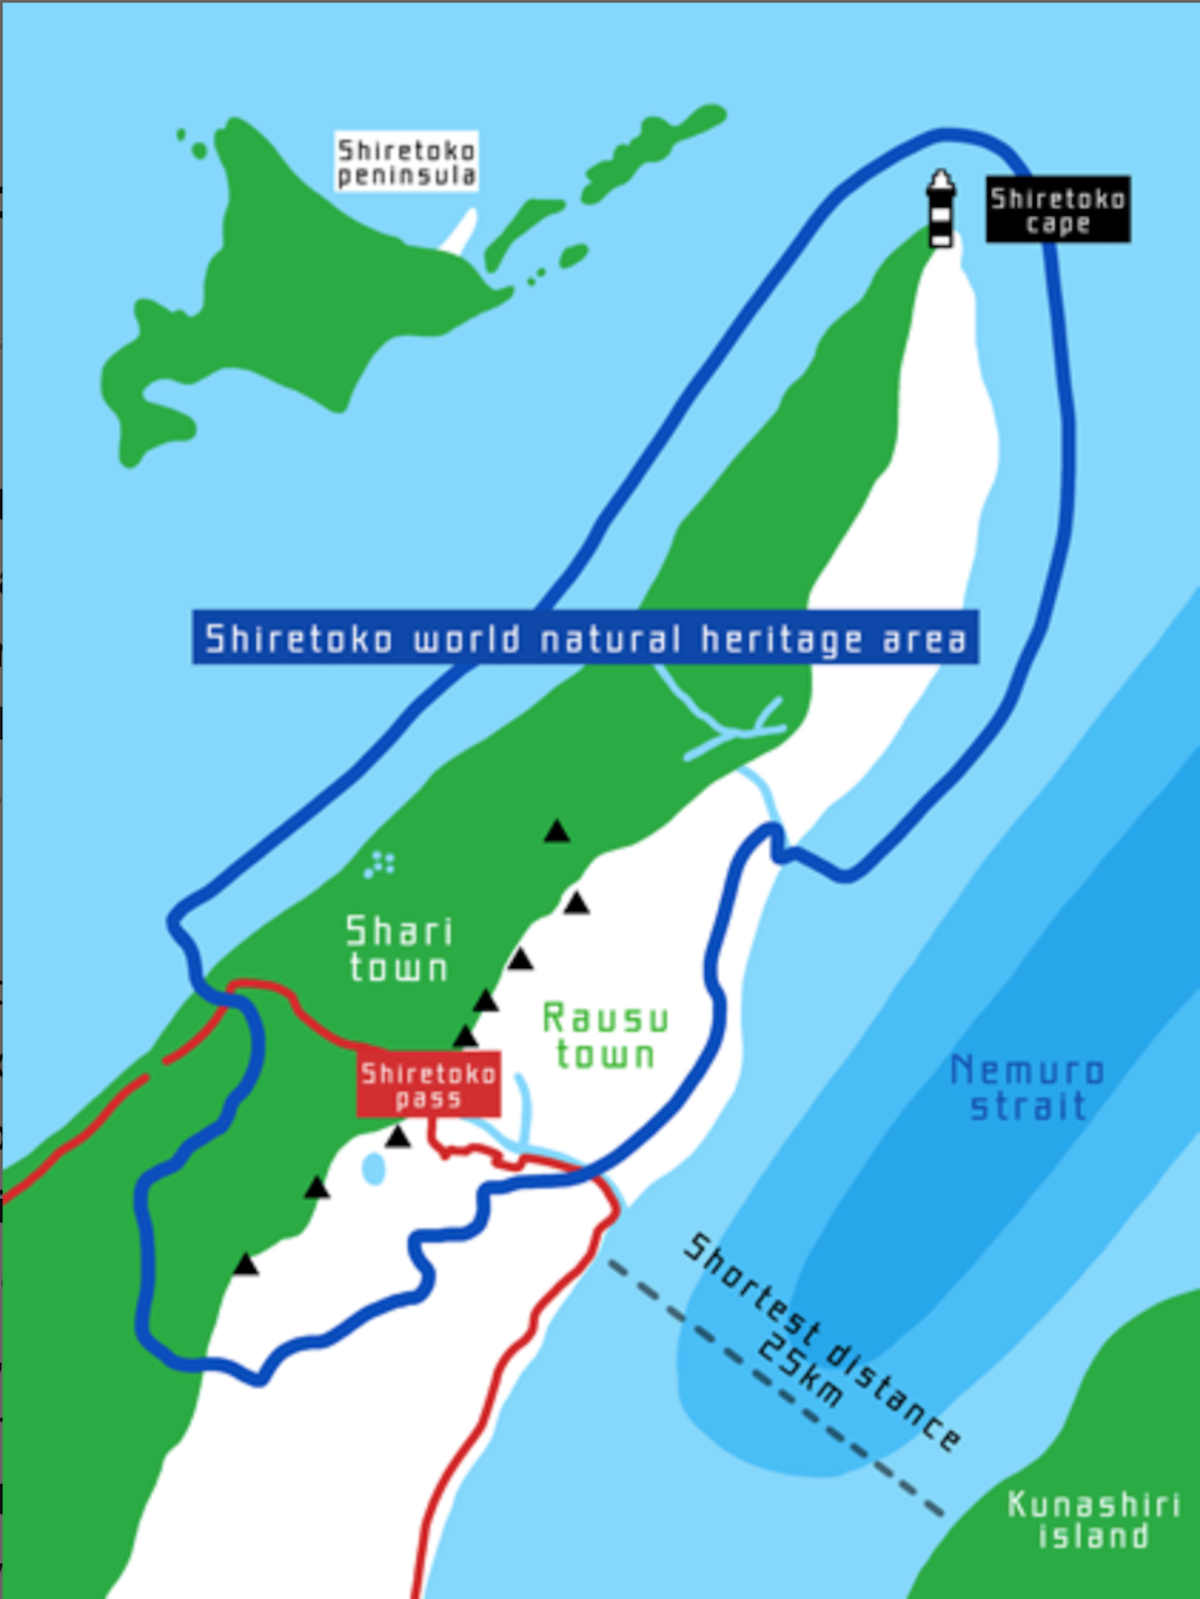 A map showing the Shiretoko Peninsula